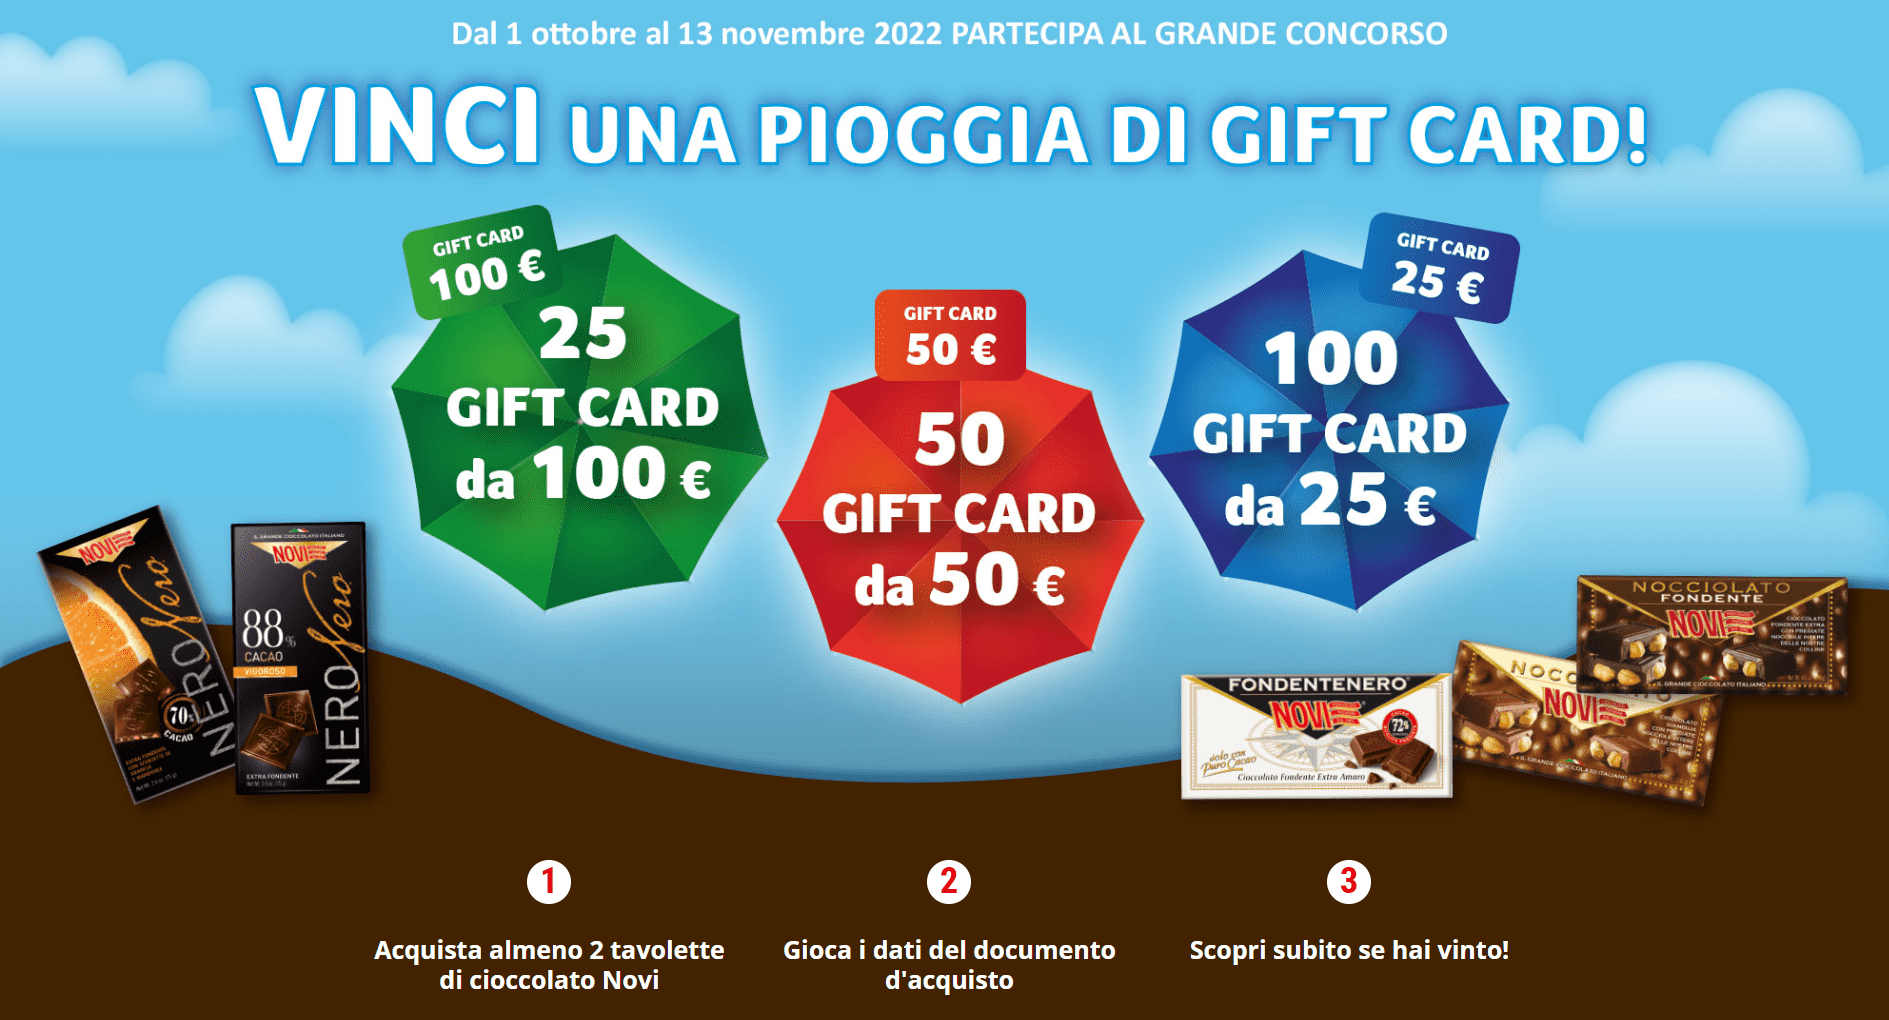 Concorso Novi: vinci una pioggia di gift card da 25€, 50€ e 100€